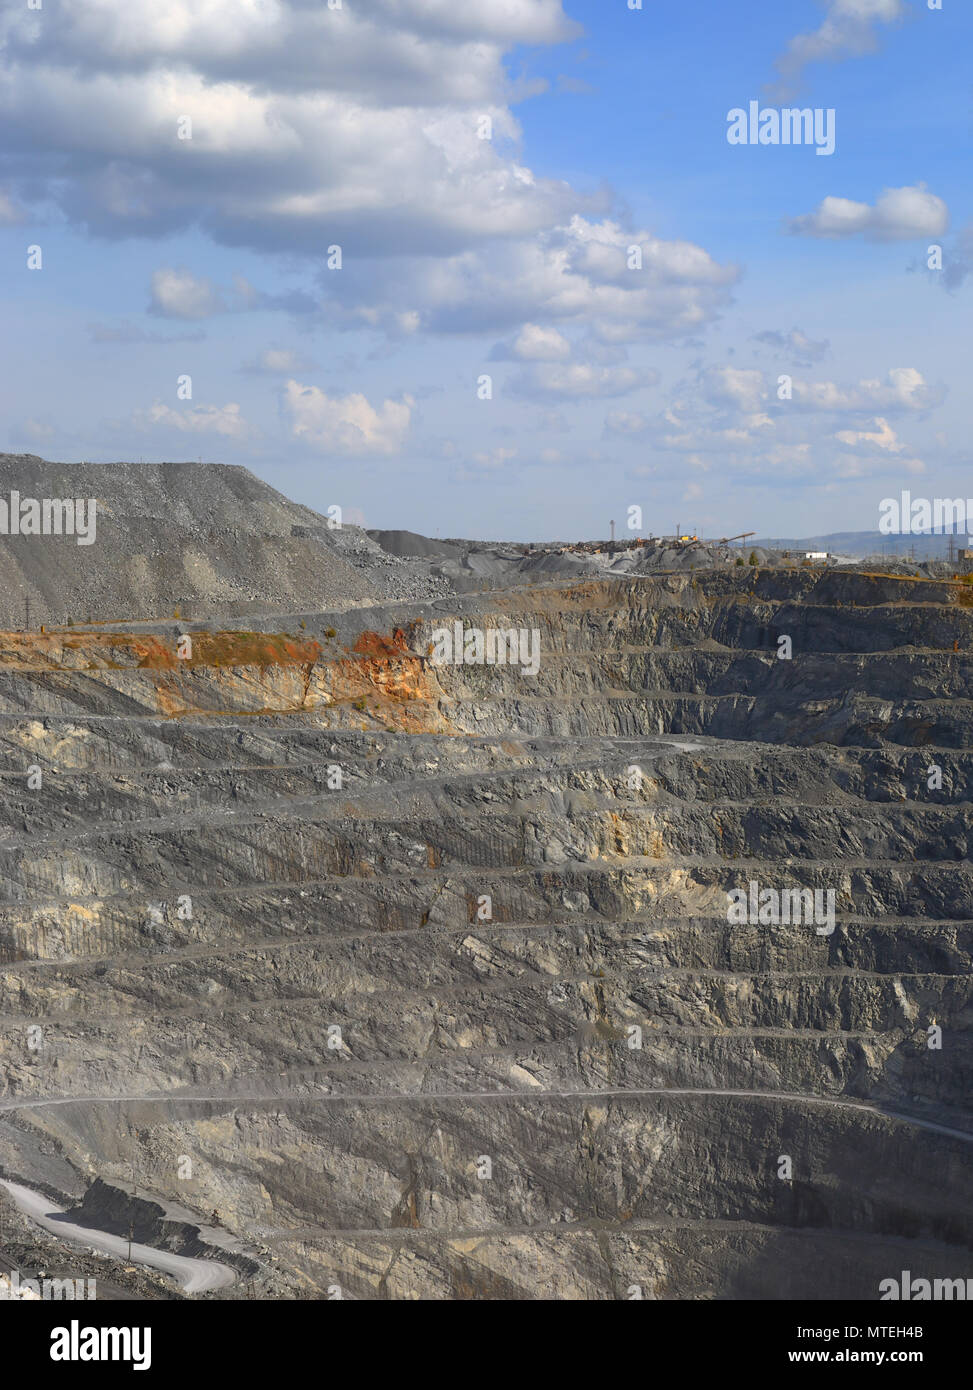 Production de gravier dans la région de quarry Banque D'Images